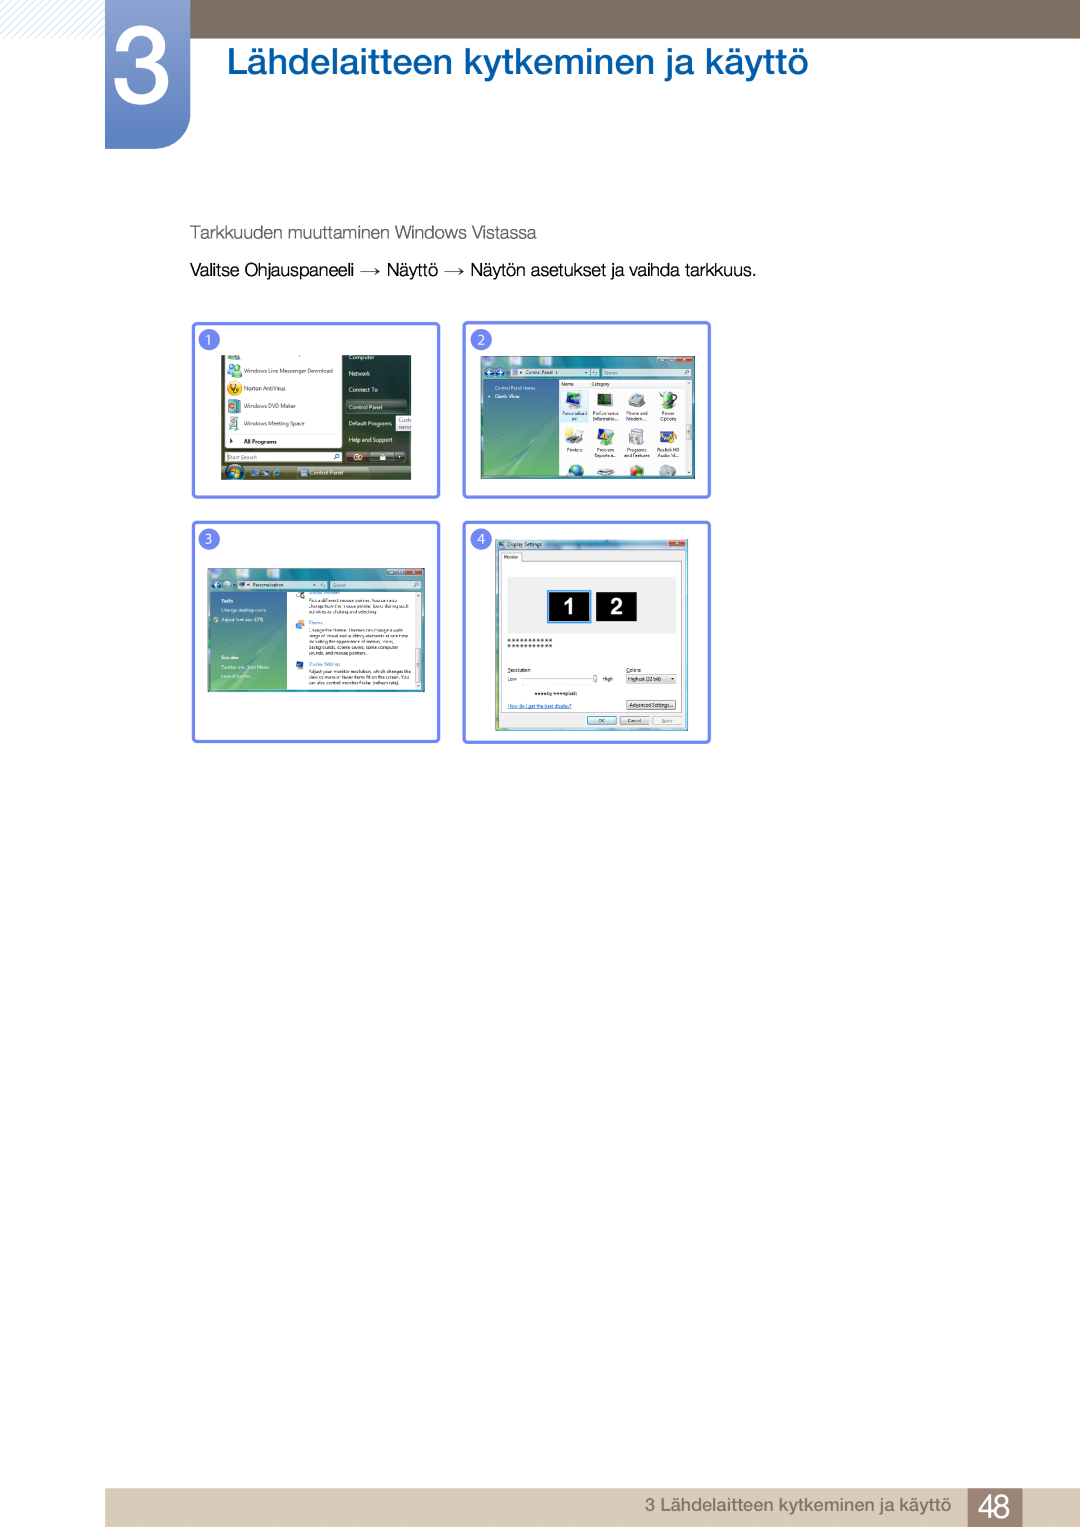 Samsung LC23A750XS/EN, LC27A750XS/EN manual 3 Lähdelaitteen kytkeminen ja käyttö, Tarkkuuden muuttaminen Windows Vistassa 